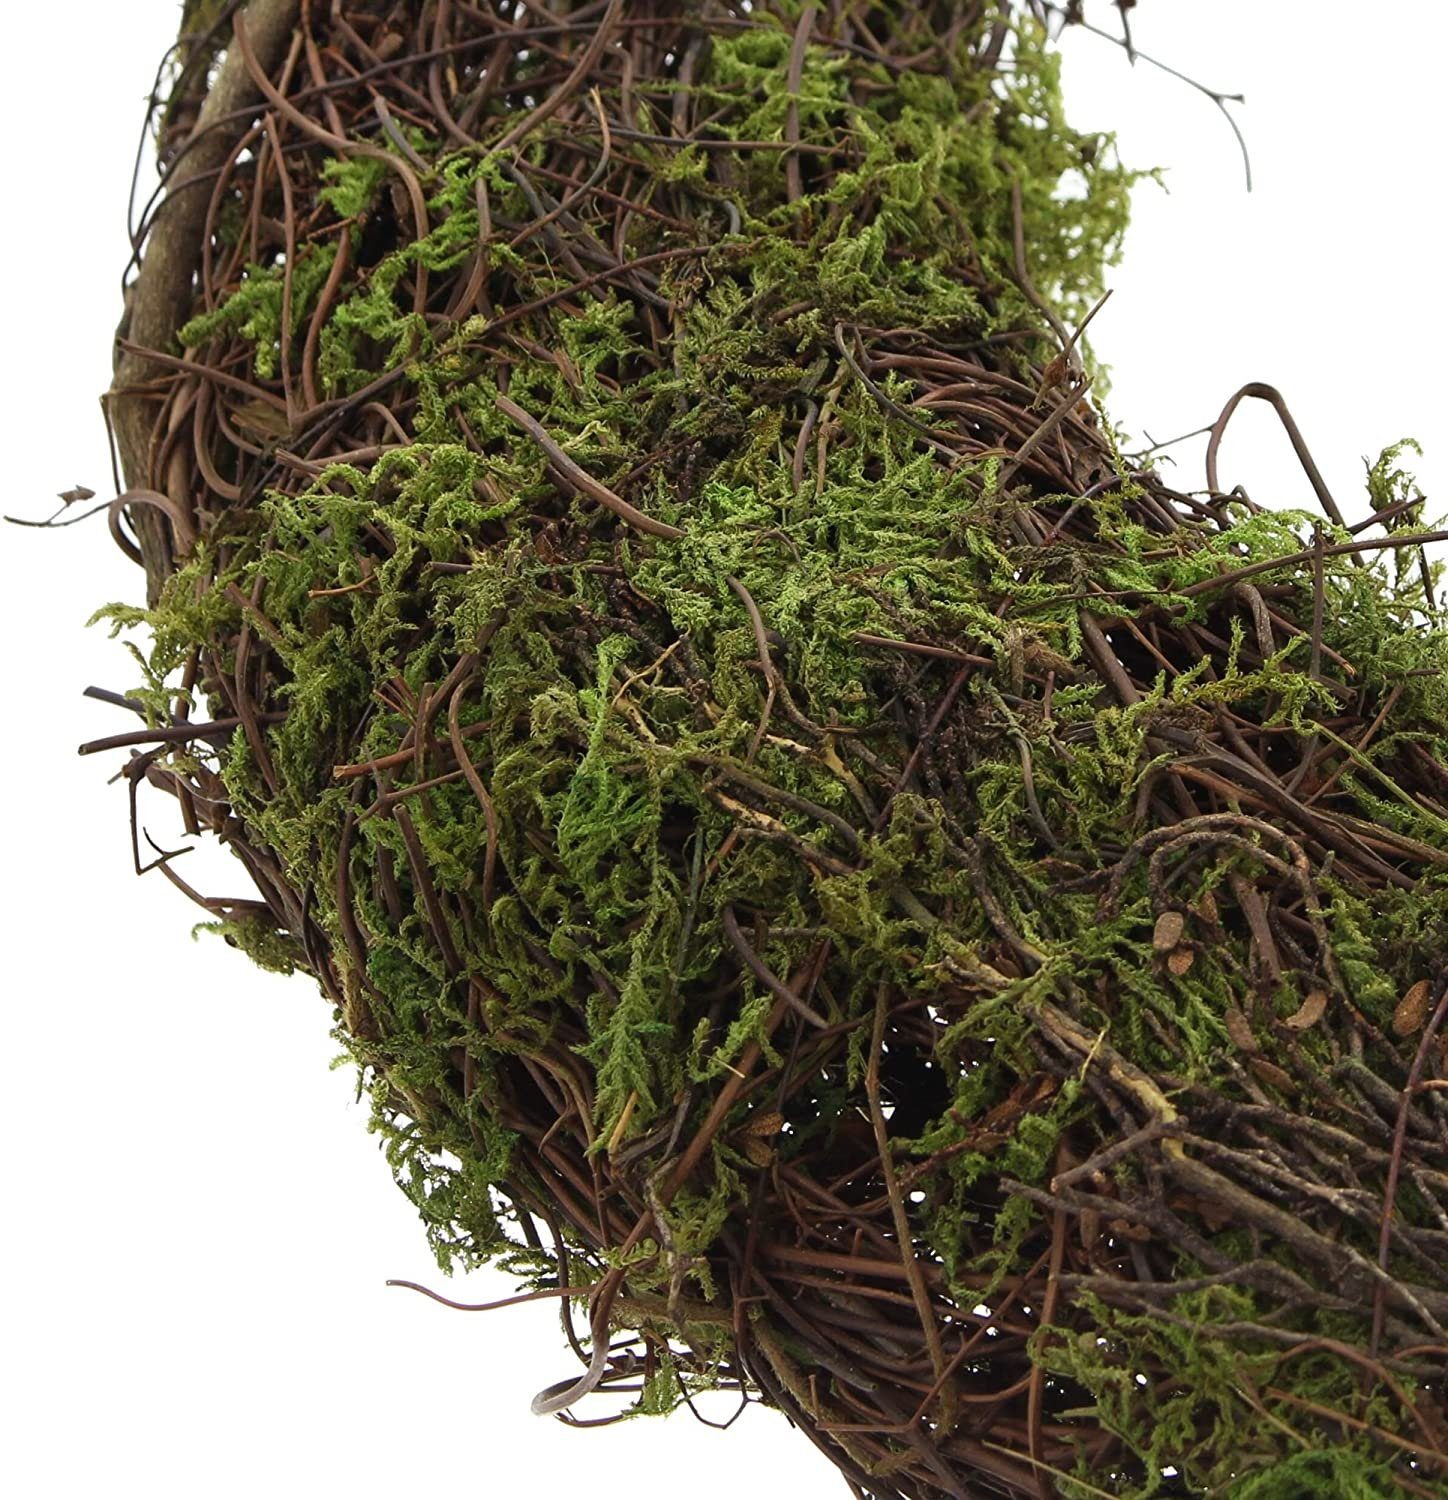 Naturkranz, Dekokranz "Moos" grün Ø / braun Reisig, Reisigkranz, Kunstmoos aus cm, 42 mit Dekoleidenschaft